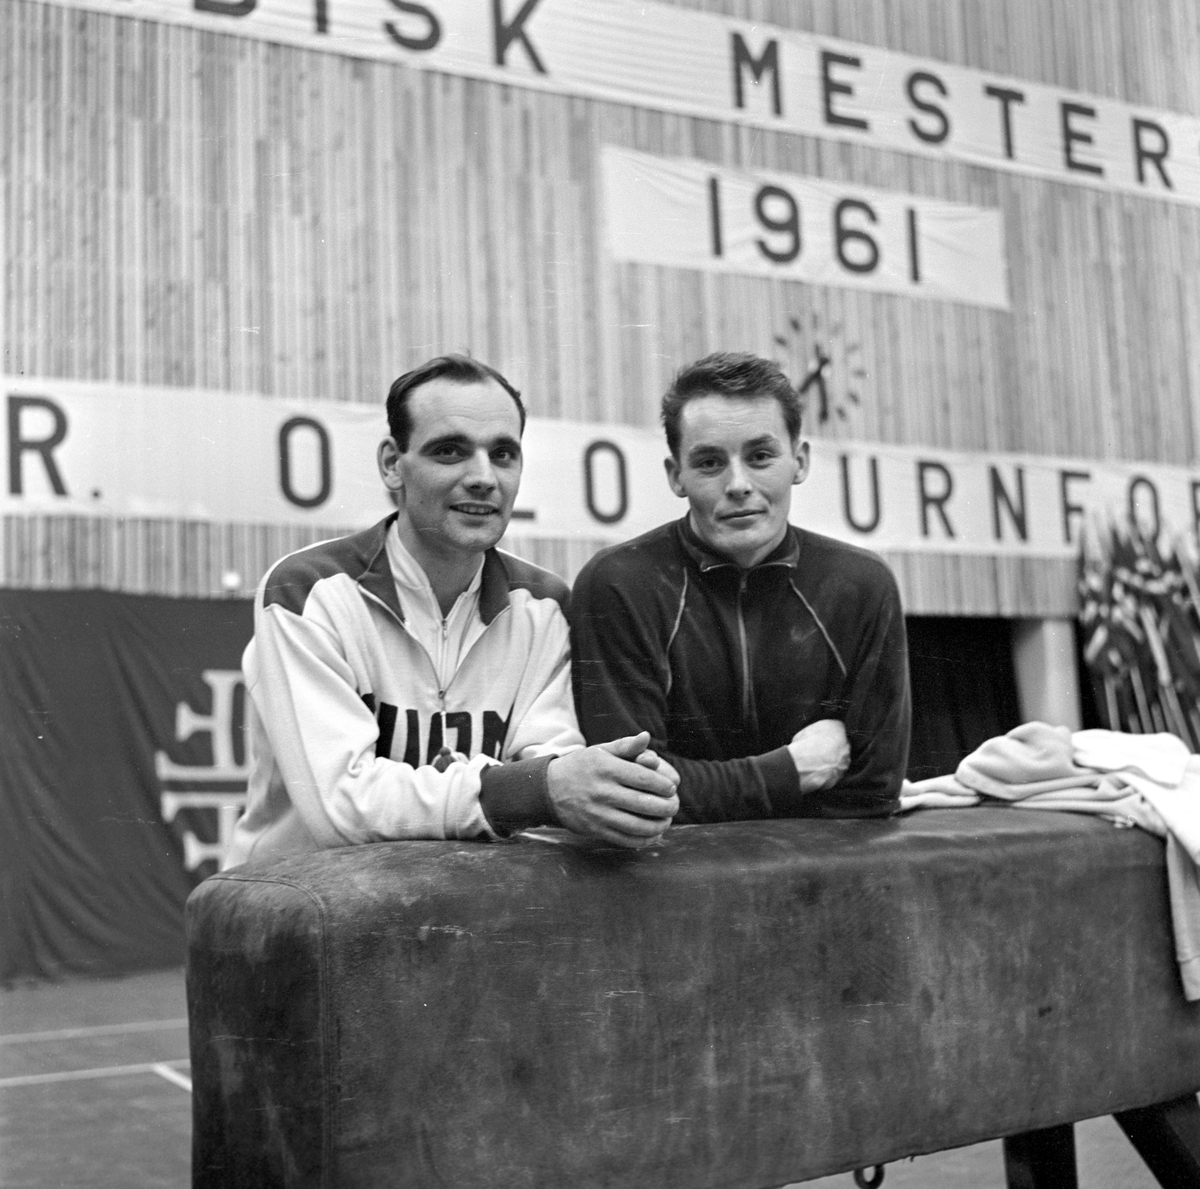 Serie. Nordisk mesterskap i turn, herreturnere, Njårdhallen i Oslo. Fotografert 2. desember 1961.